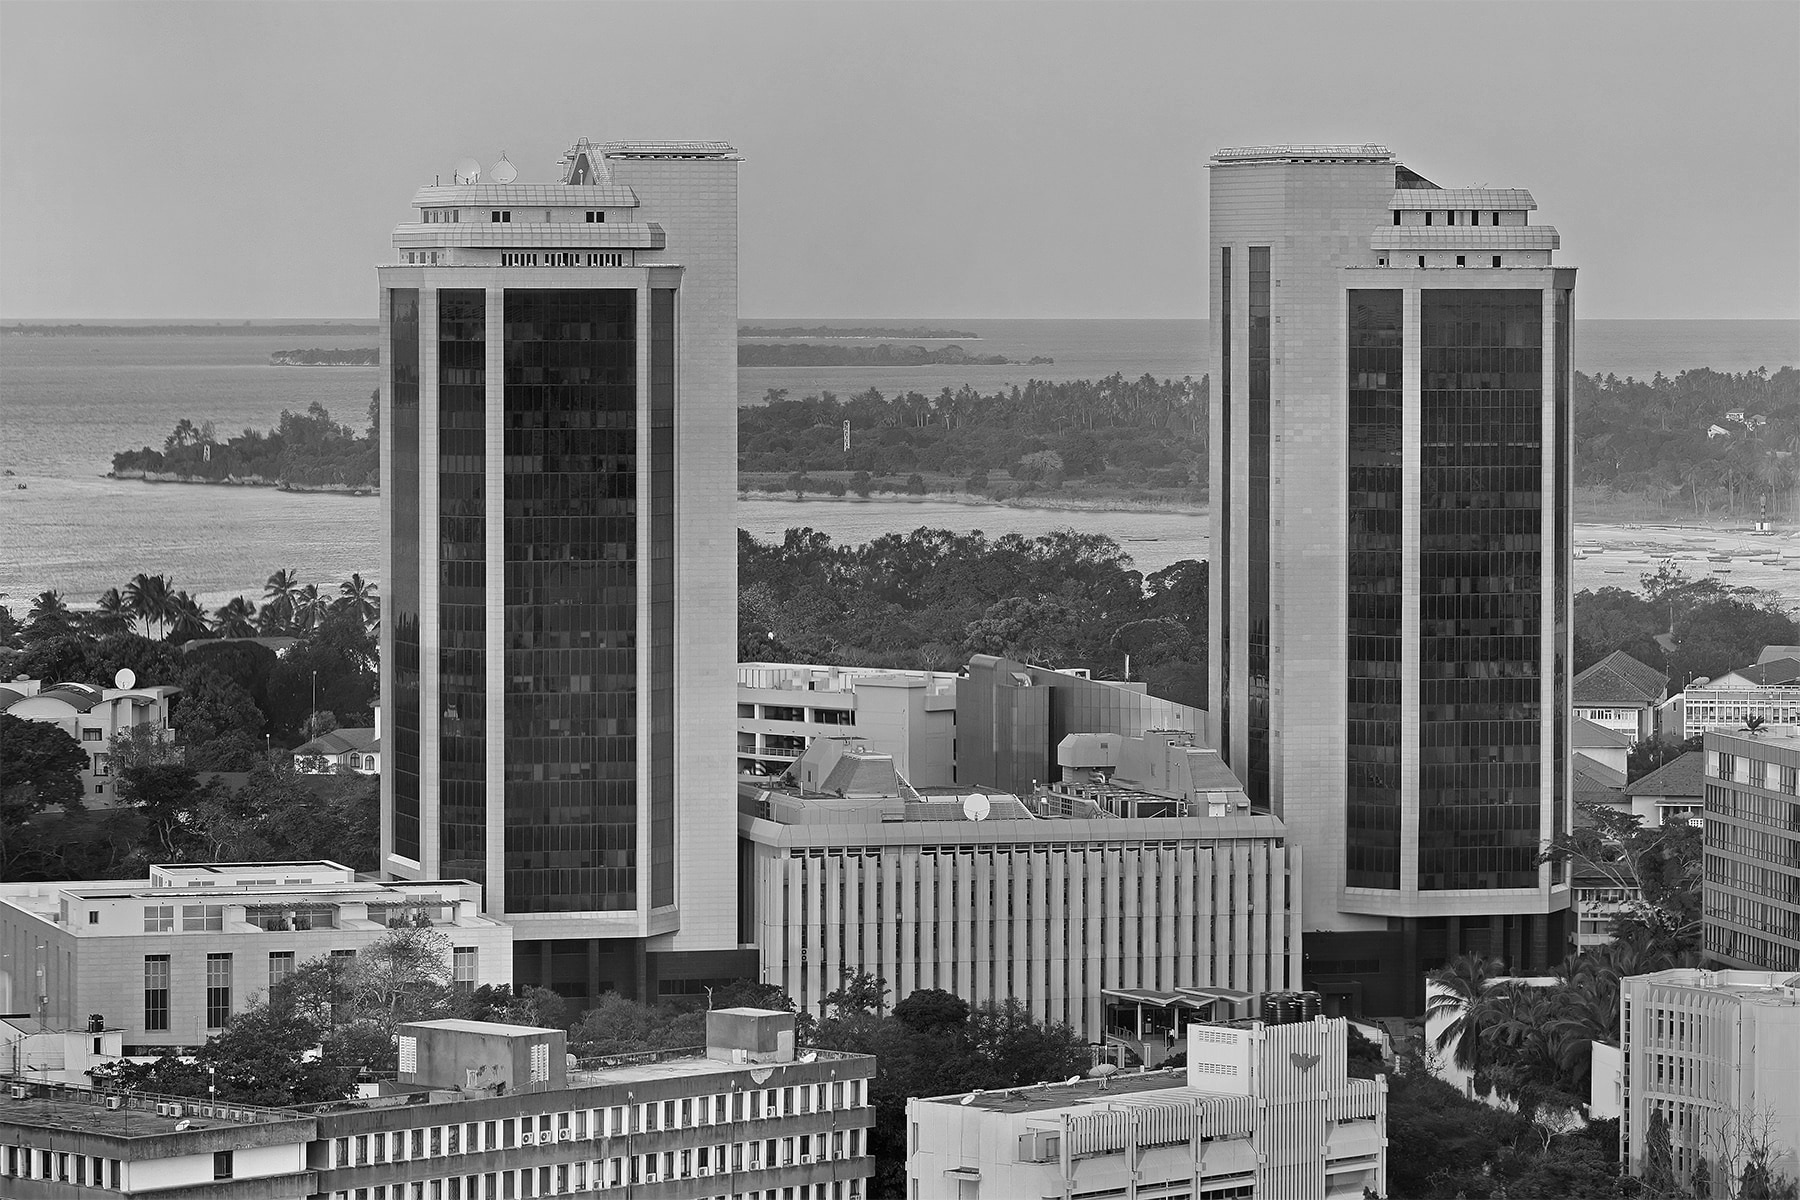 The Central Bank of Tanzania headoffice (Dar es Salaam)